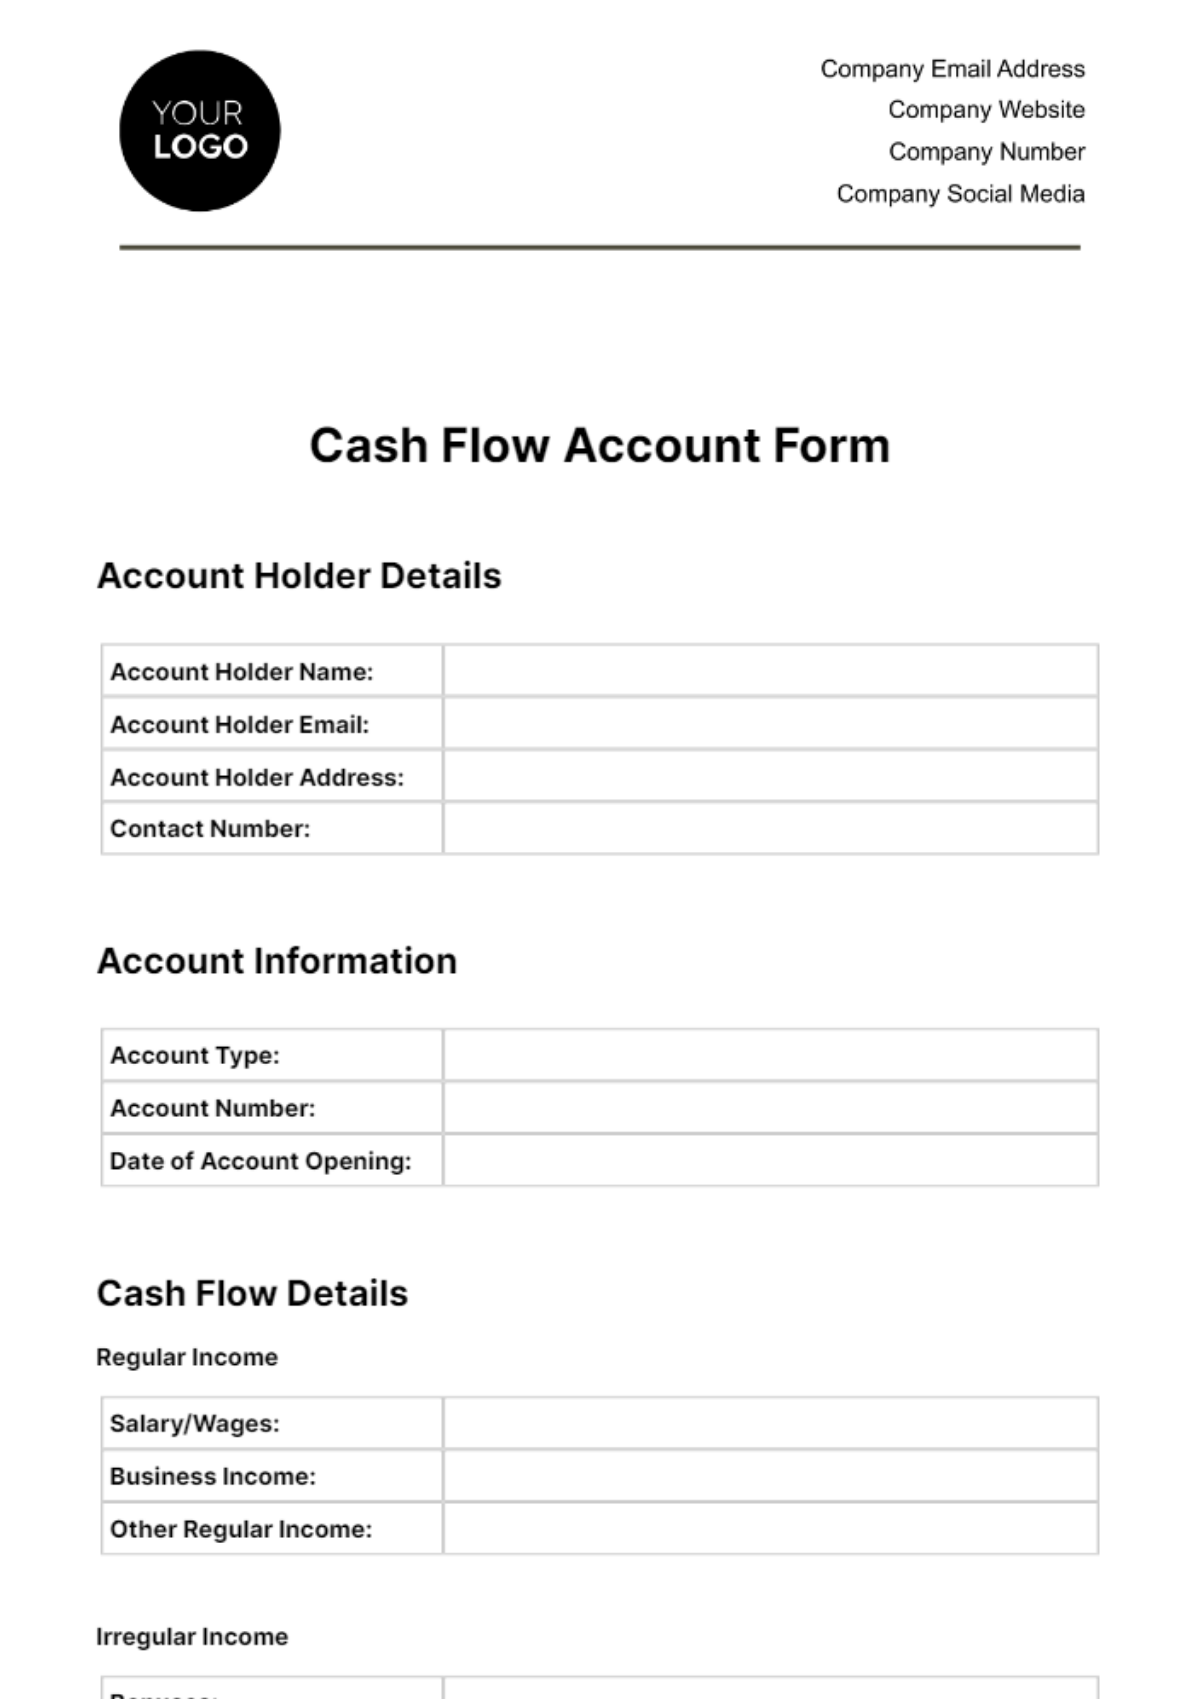 Cash Flow Account Form Template